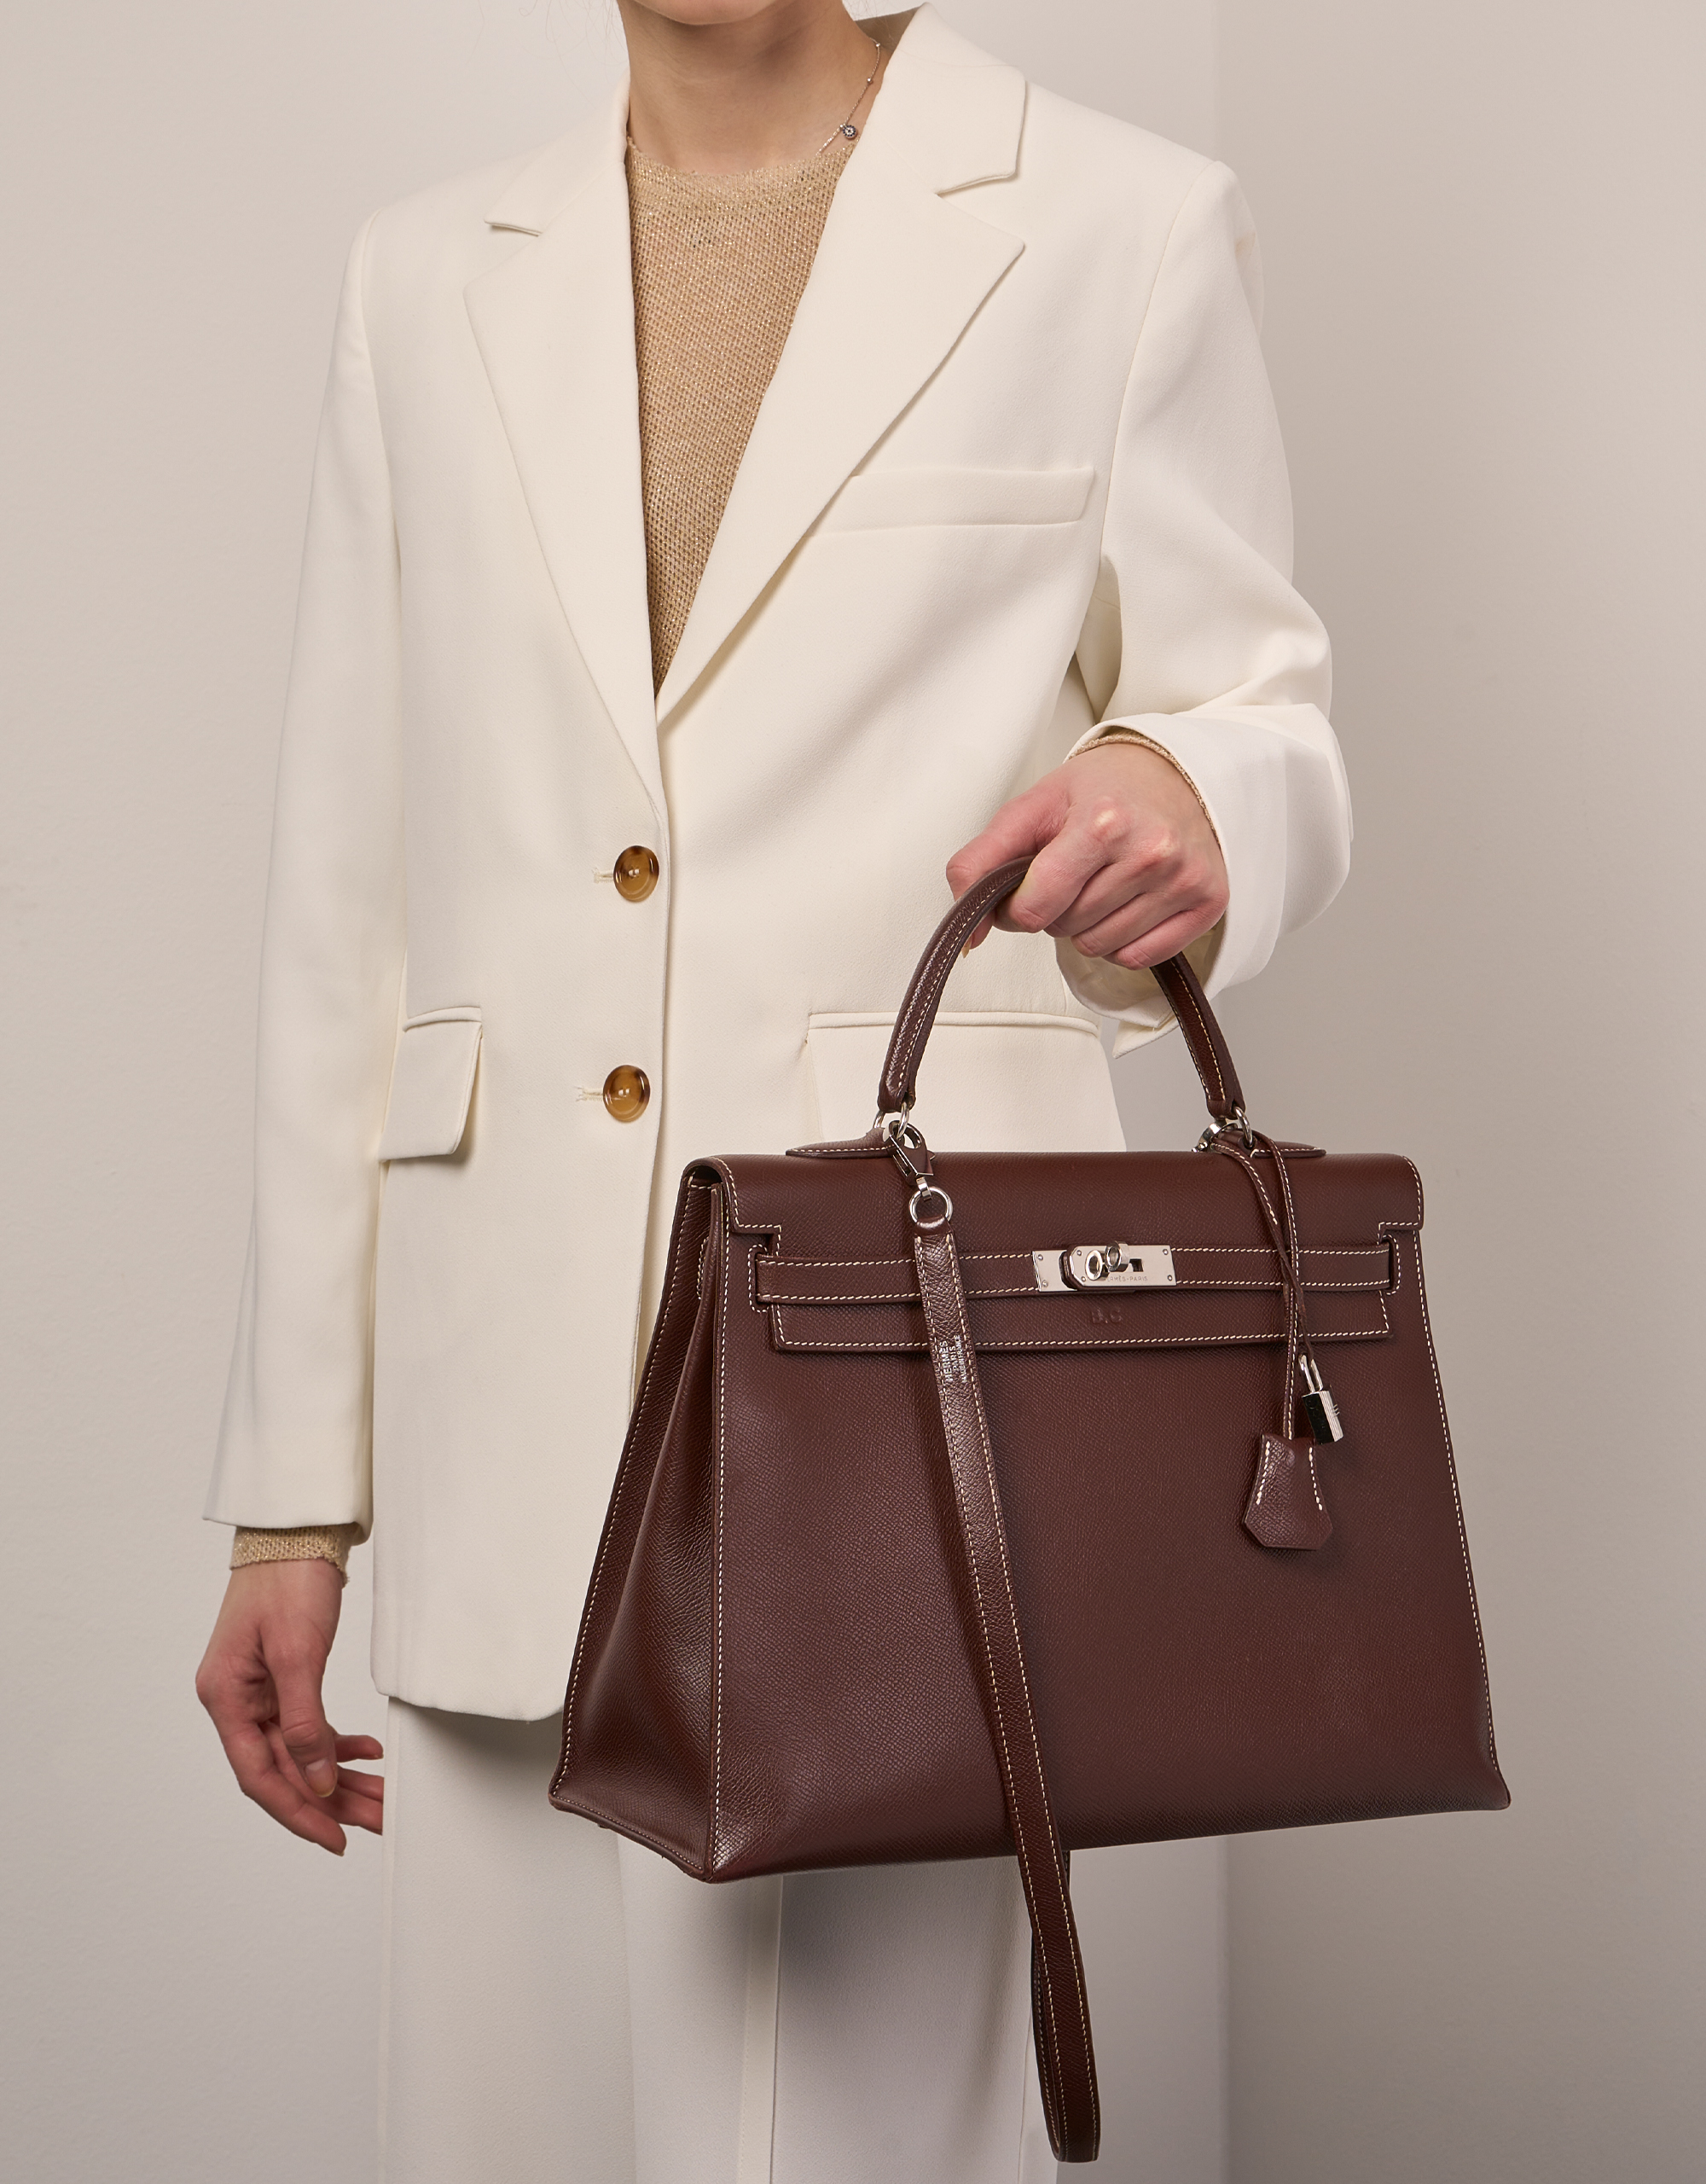 Hermès Kelly 35 Brulee Größen Getragen | Verkaufen Sie Ihre Designer-Tasche auf Saclab.com